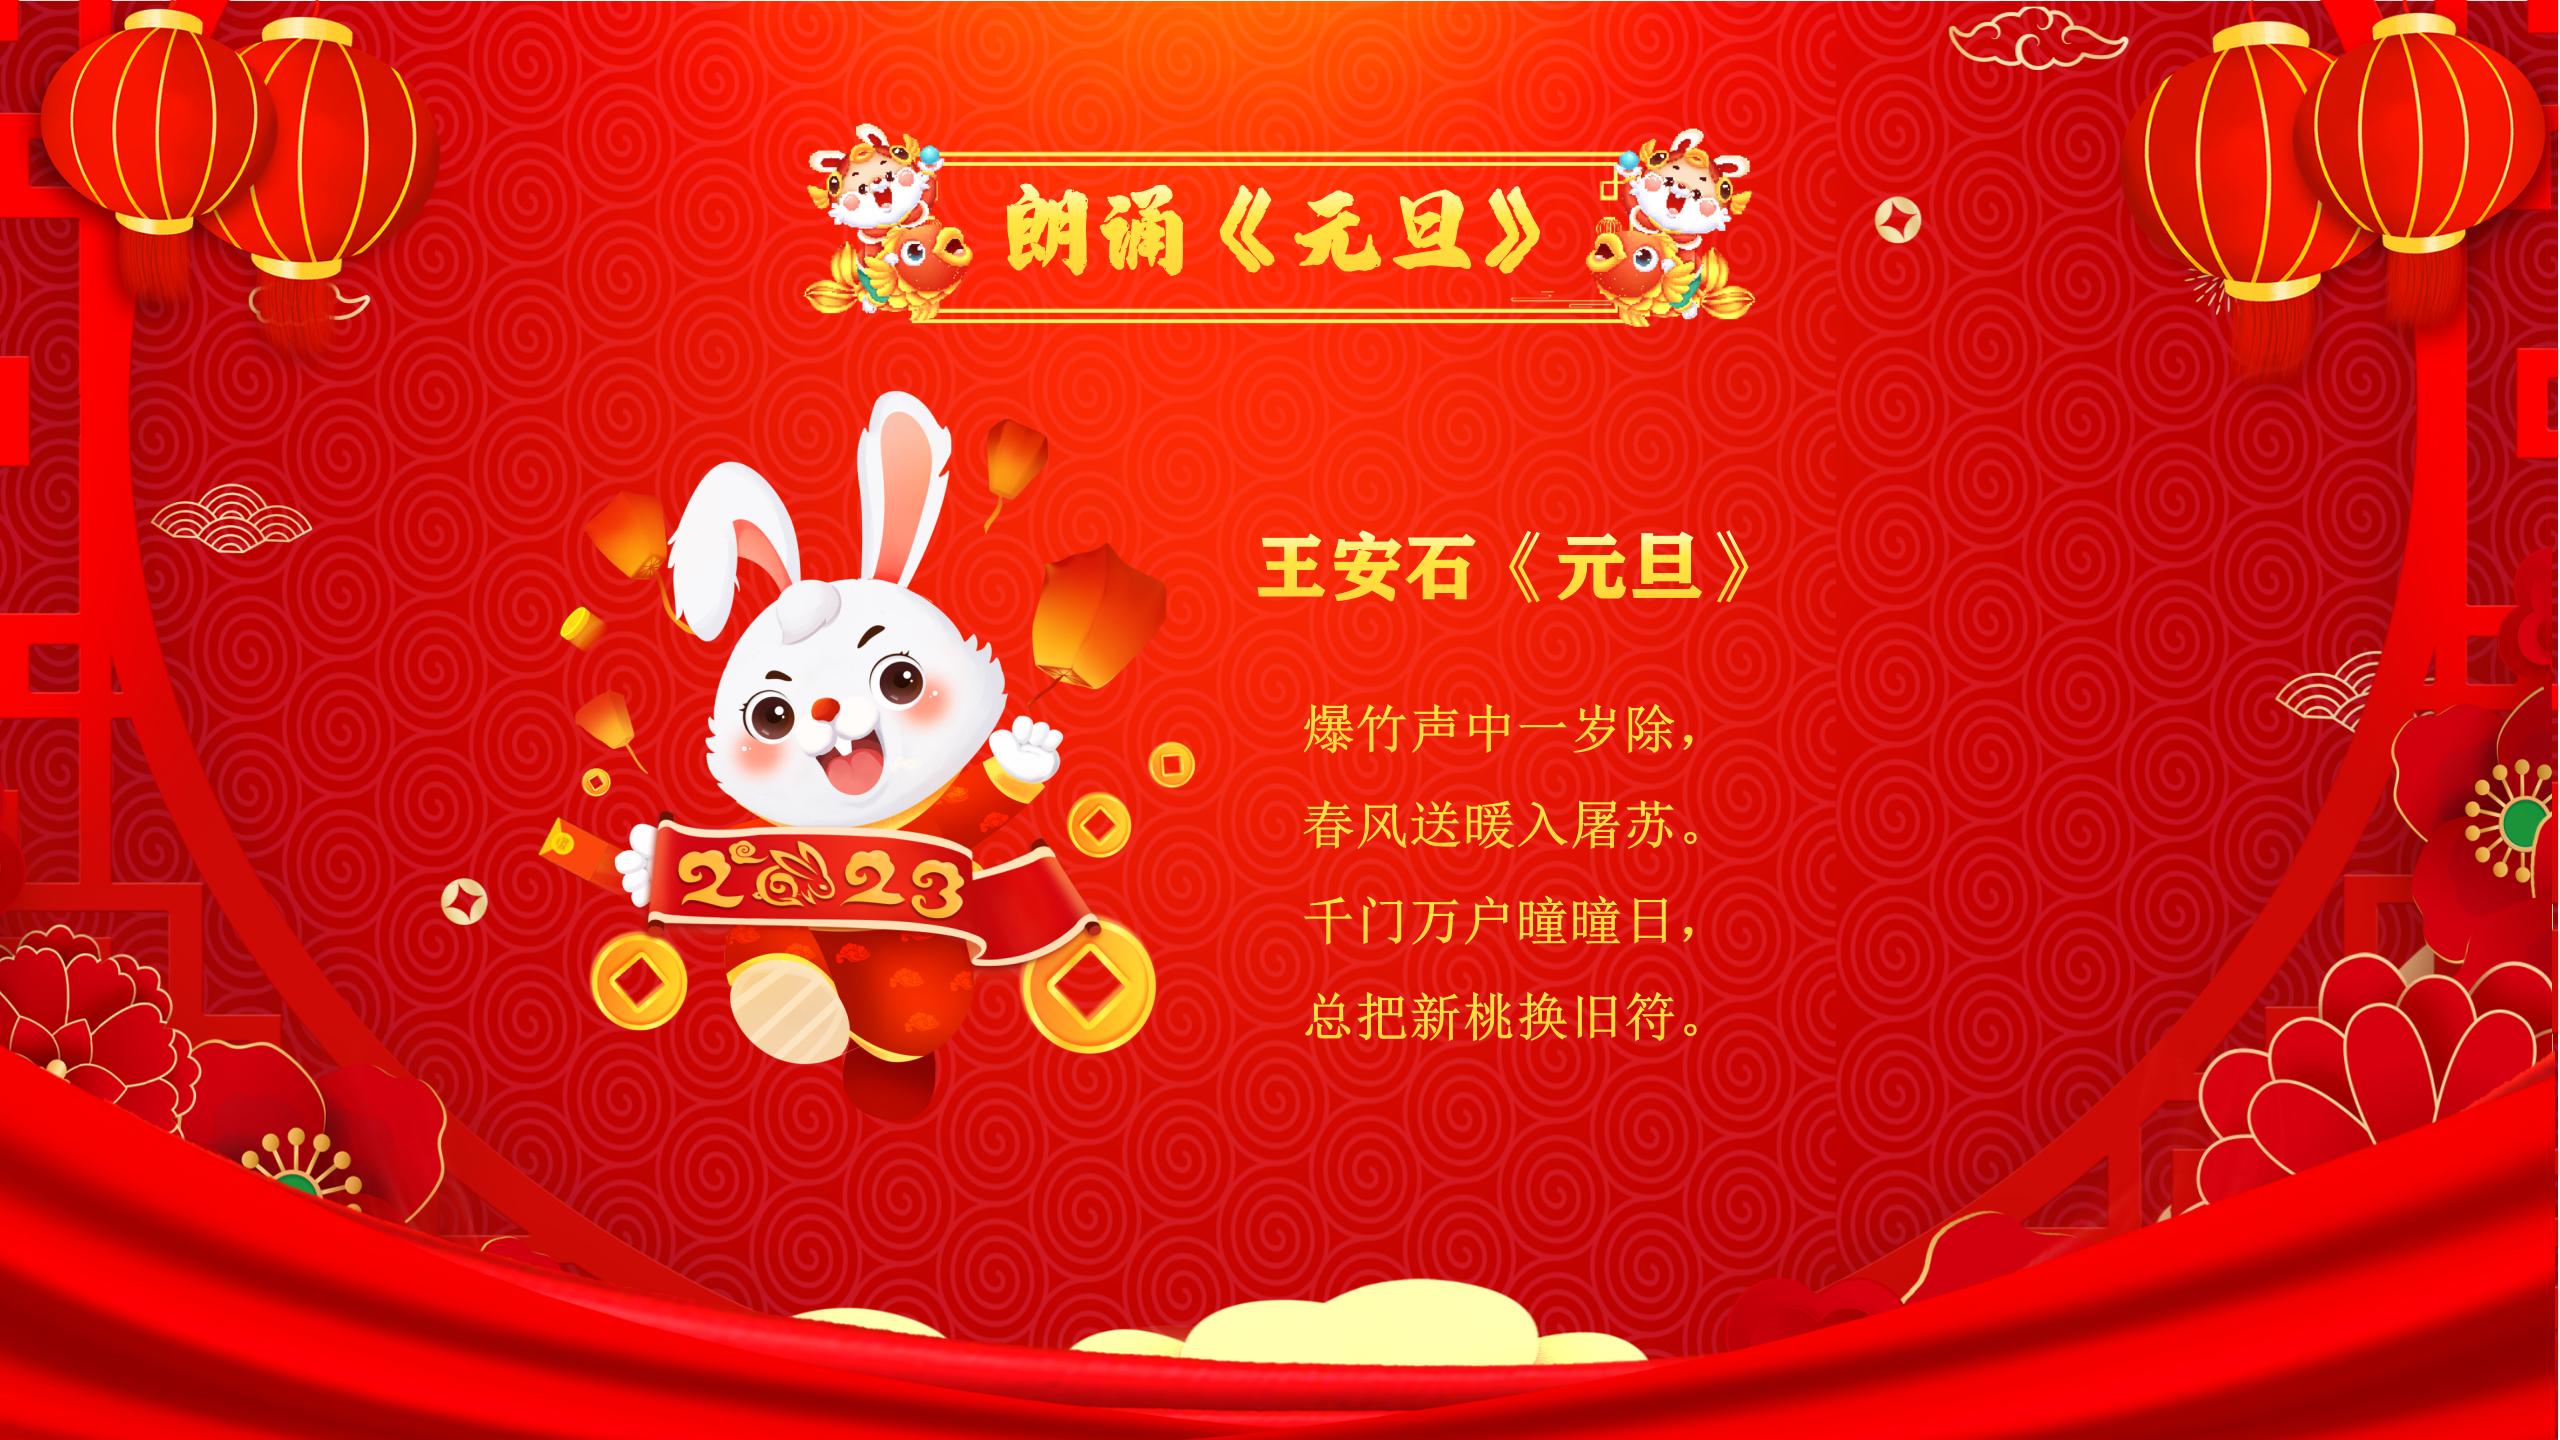 兔年春节联欢晚会PPT模板（内含片头动画）_04.jpg